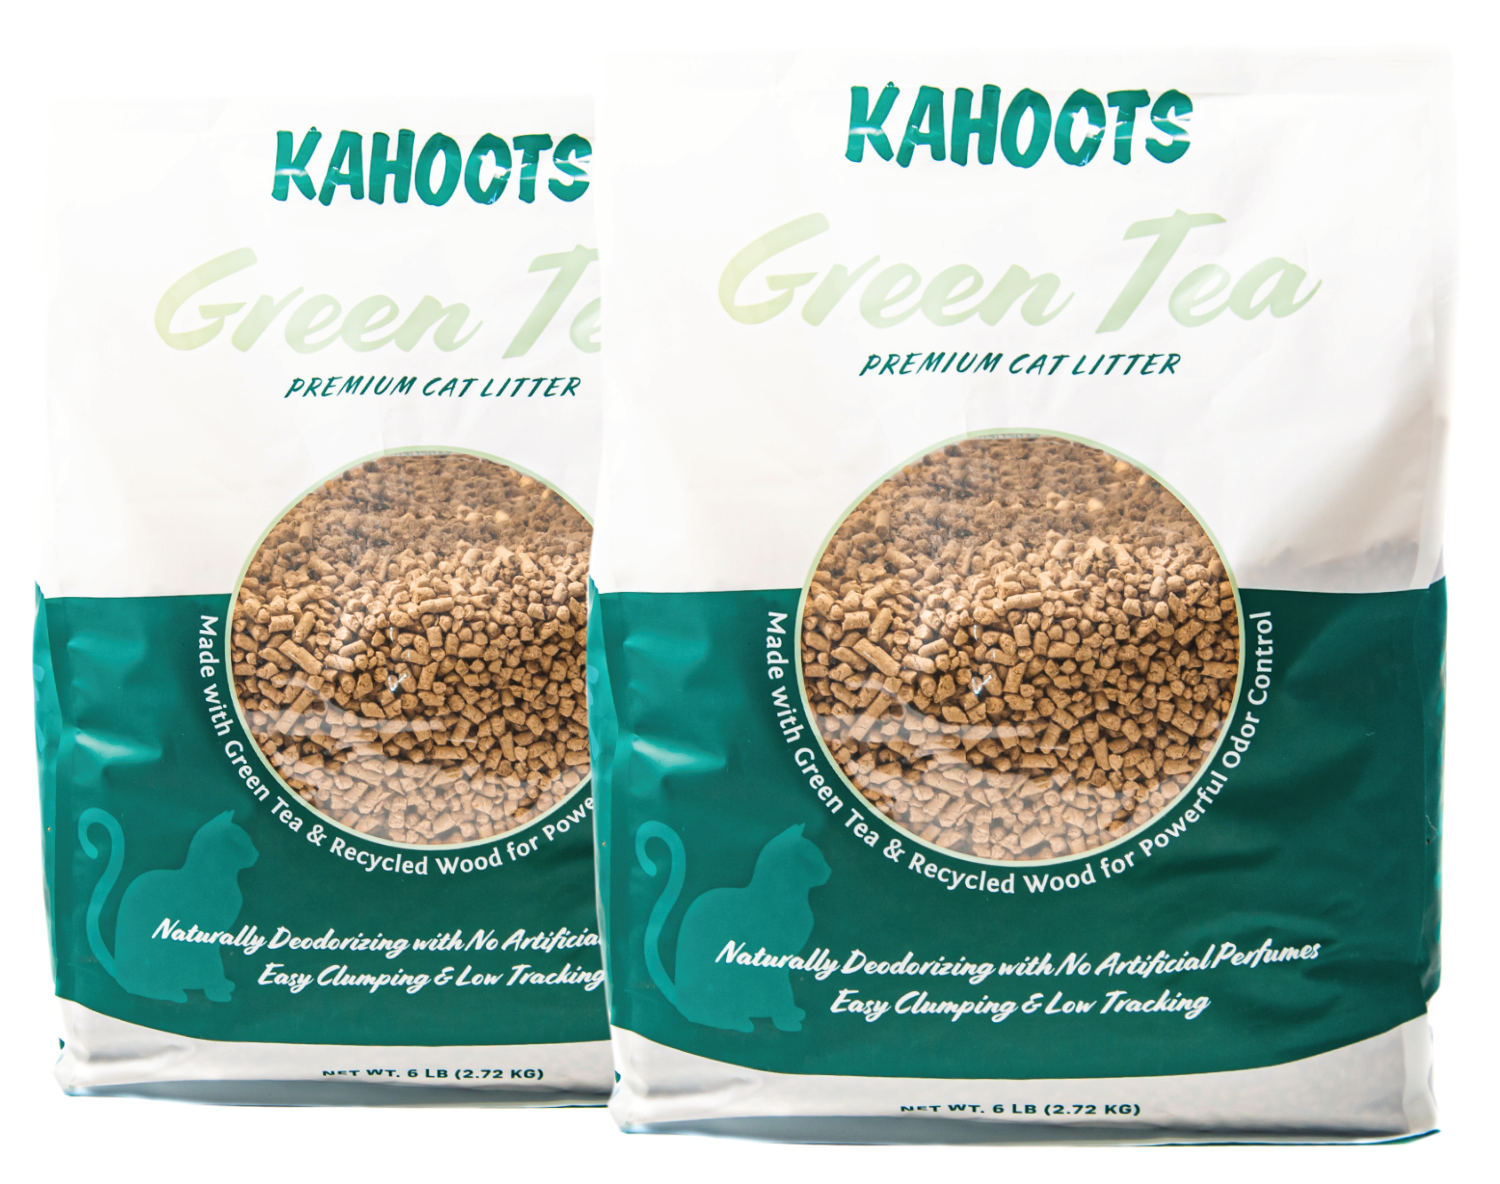 Two bags of kahoots green tea cat litter